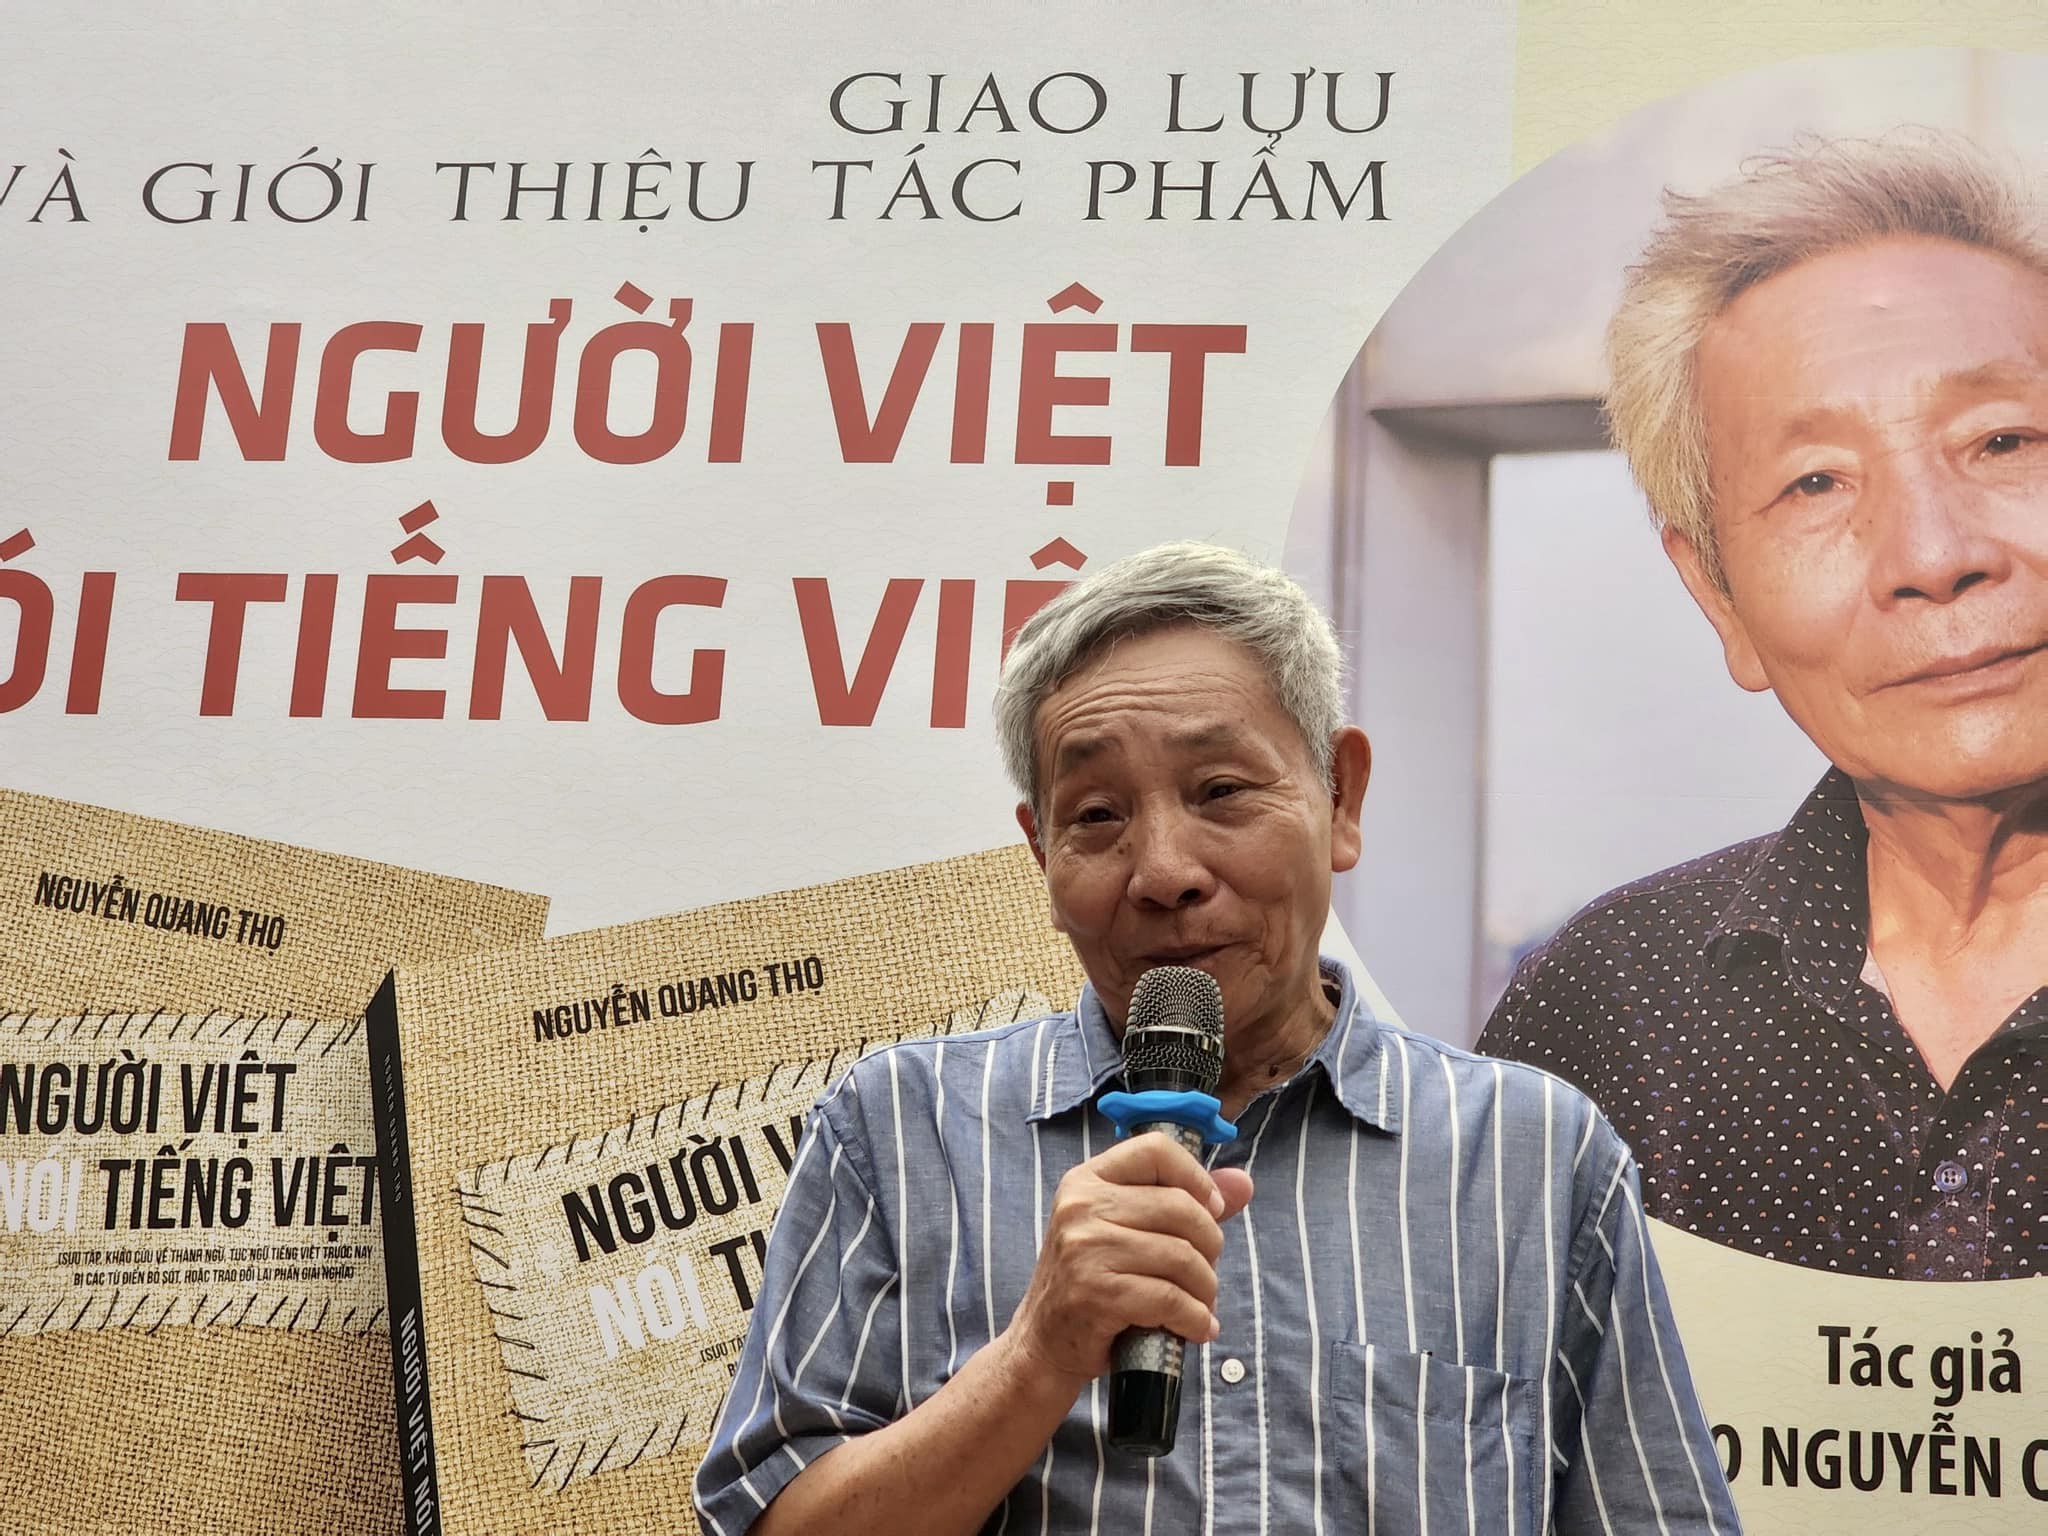 Tác giả Nguyễn Quang Thọ tại buổi giao lưu (Ảnh: Nhà xuất bản Tổng hợp Thành phố Hồ Chí Minh).